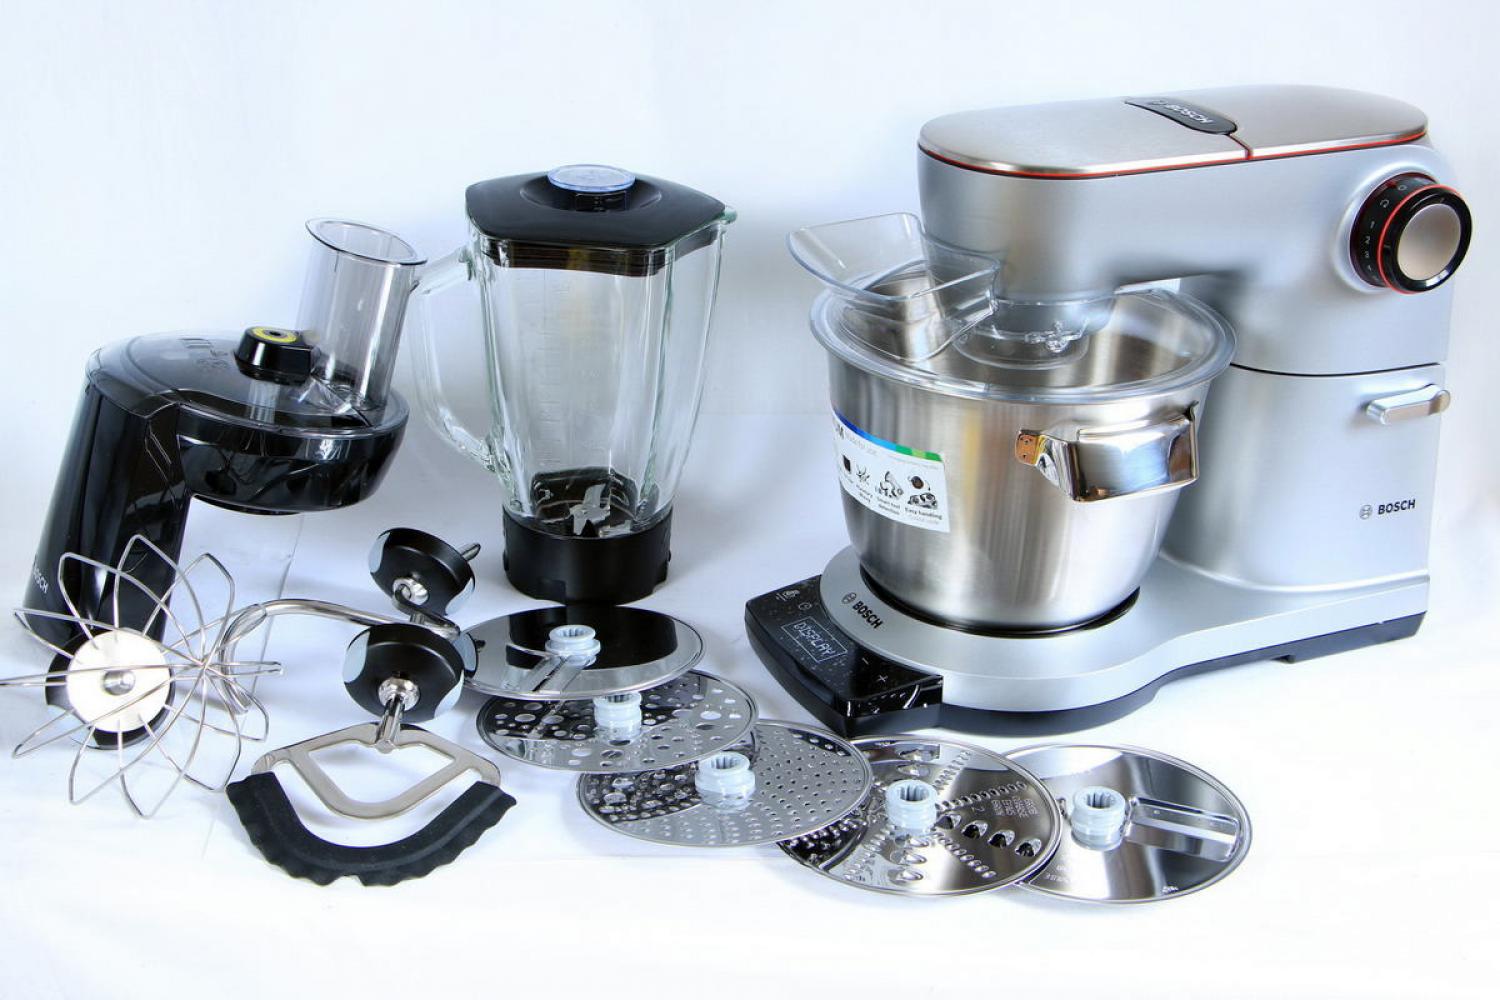 Bosch OptiMUM 9 Küchenmaschine 1500W 5,5l + Zubehör Silber MUM9DT5S41 B-Ware 17